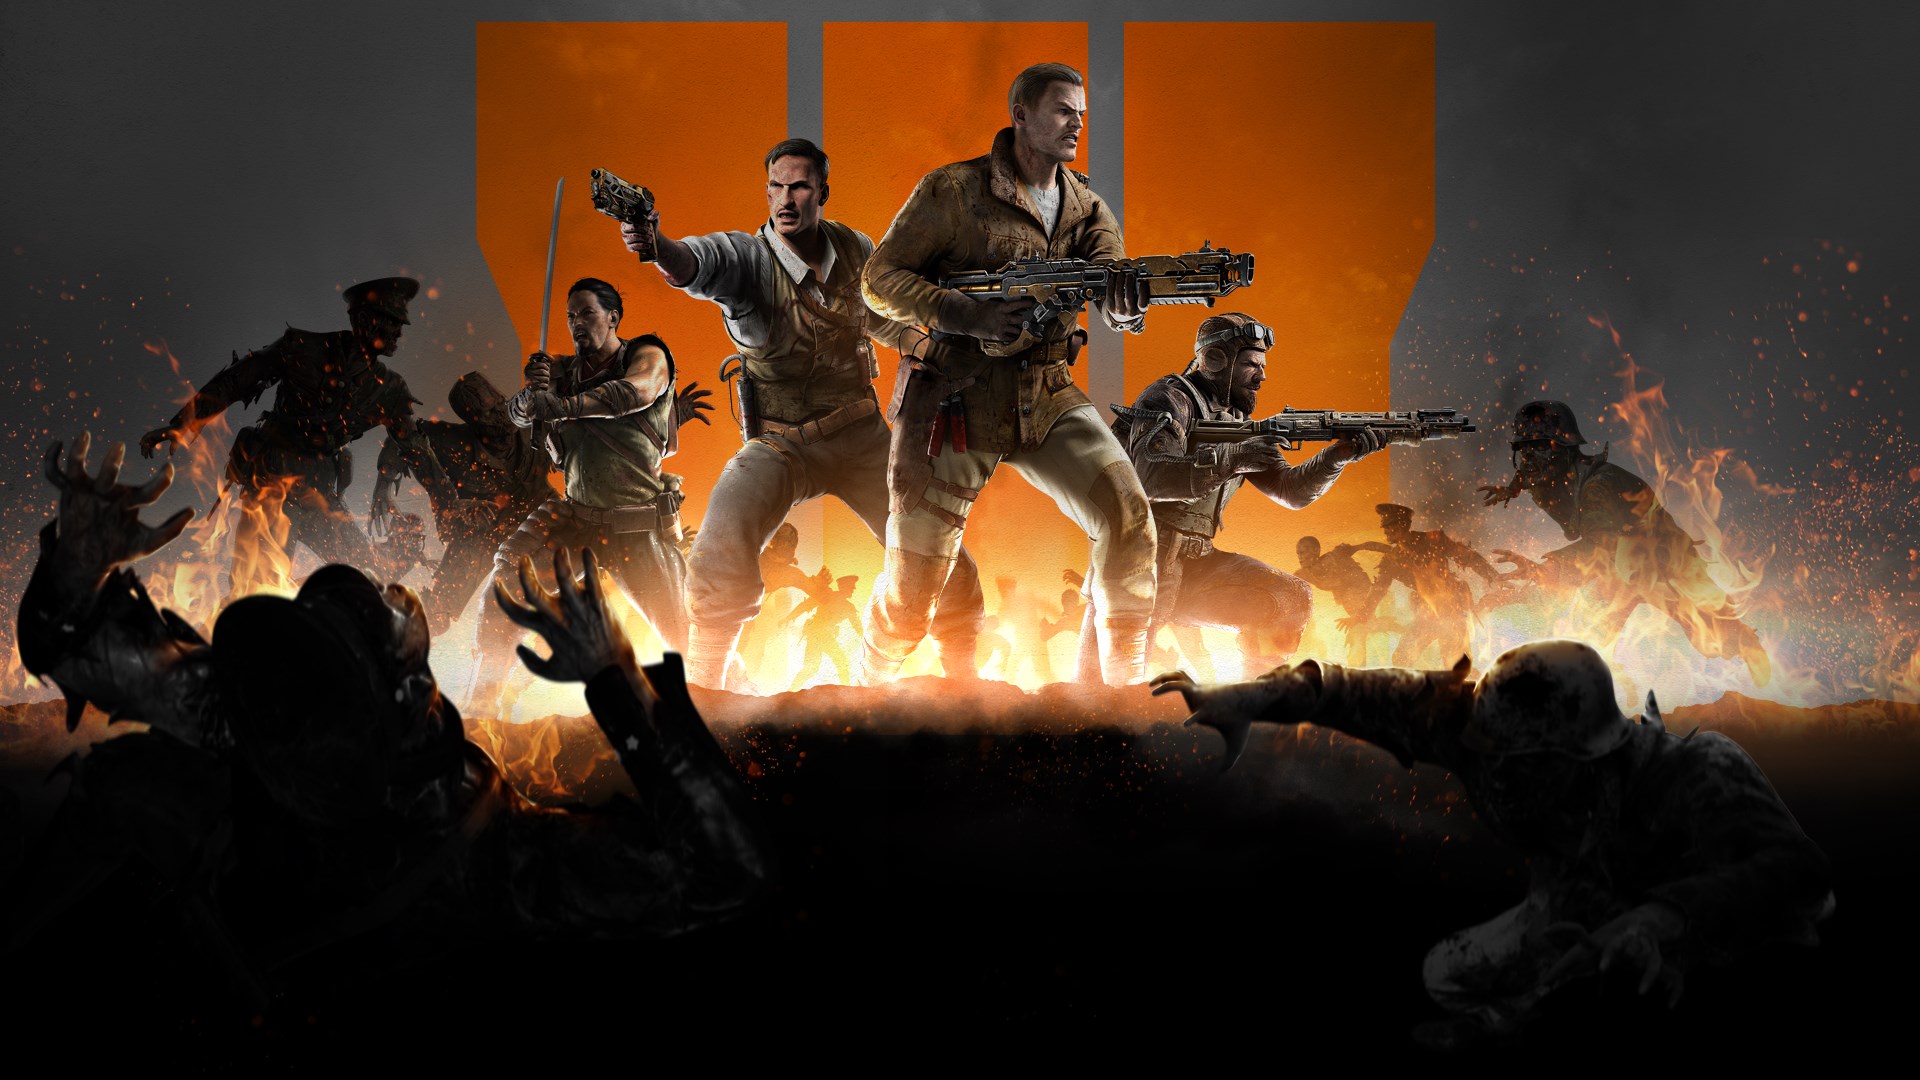 Buy Call of Duty® - Microsoft Store en-IL